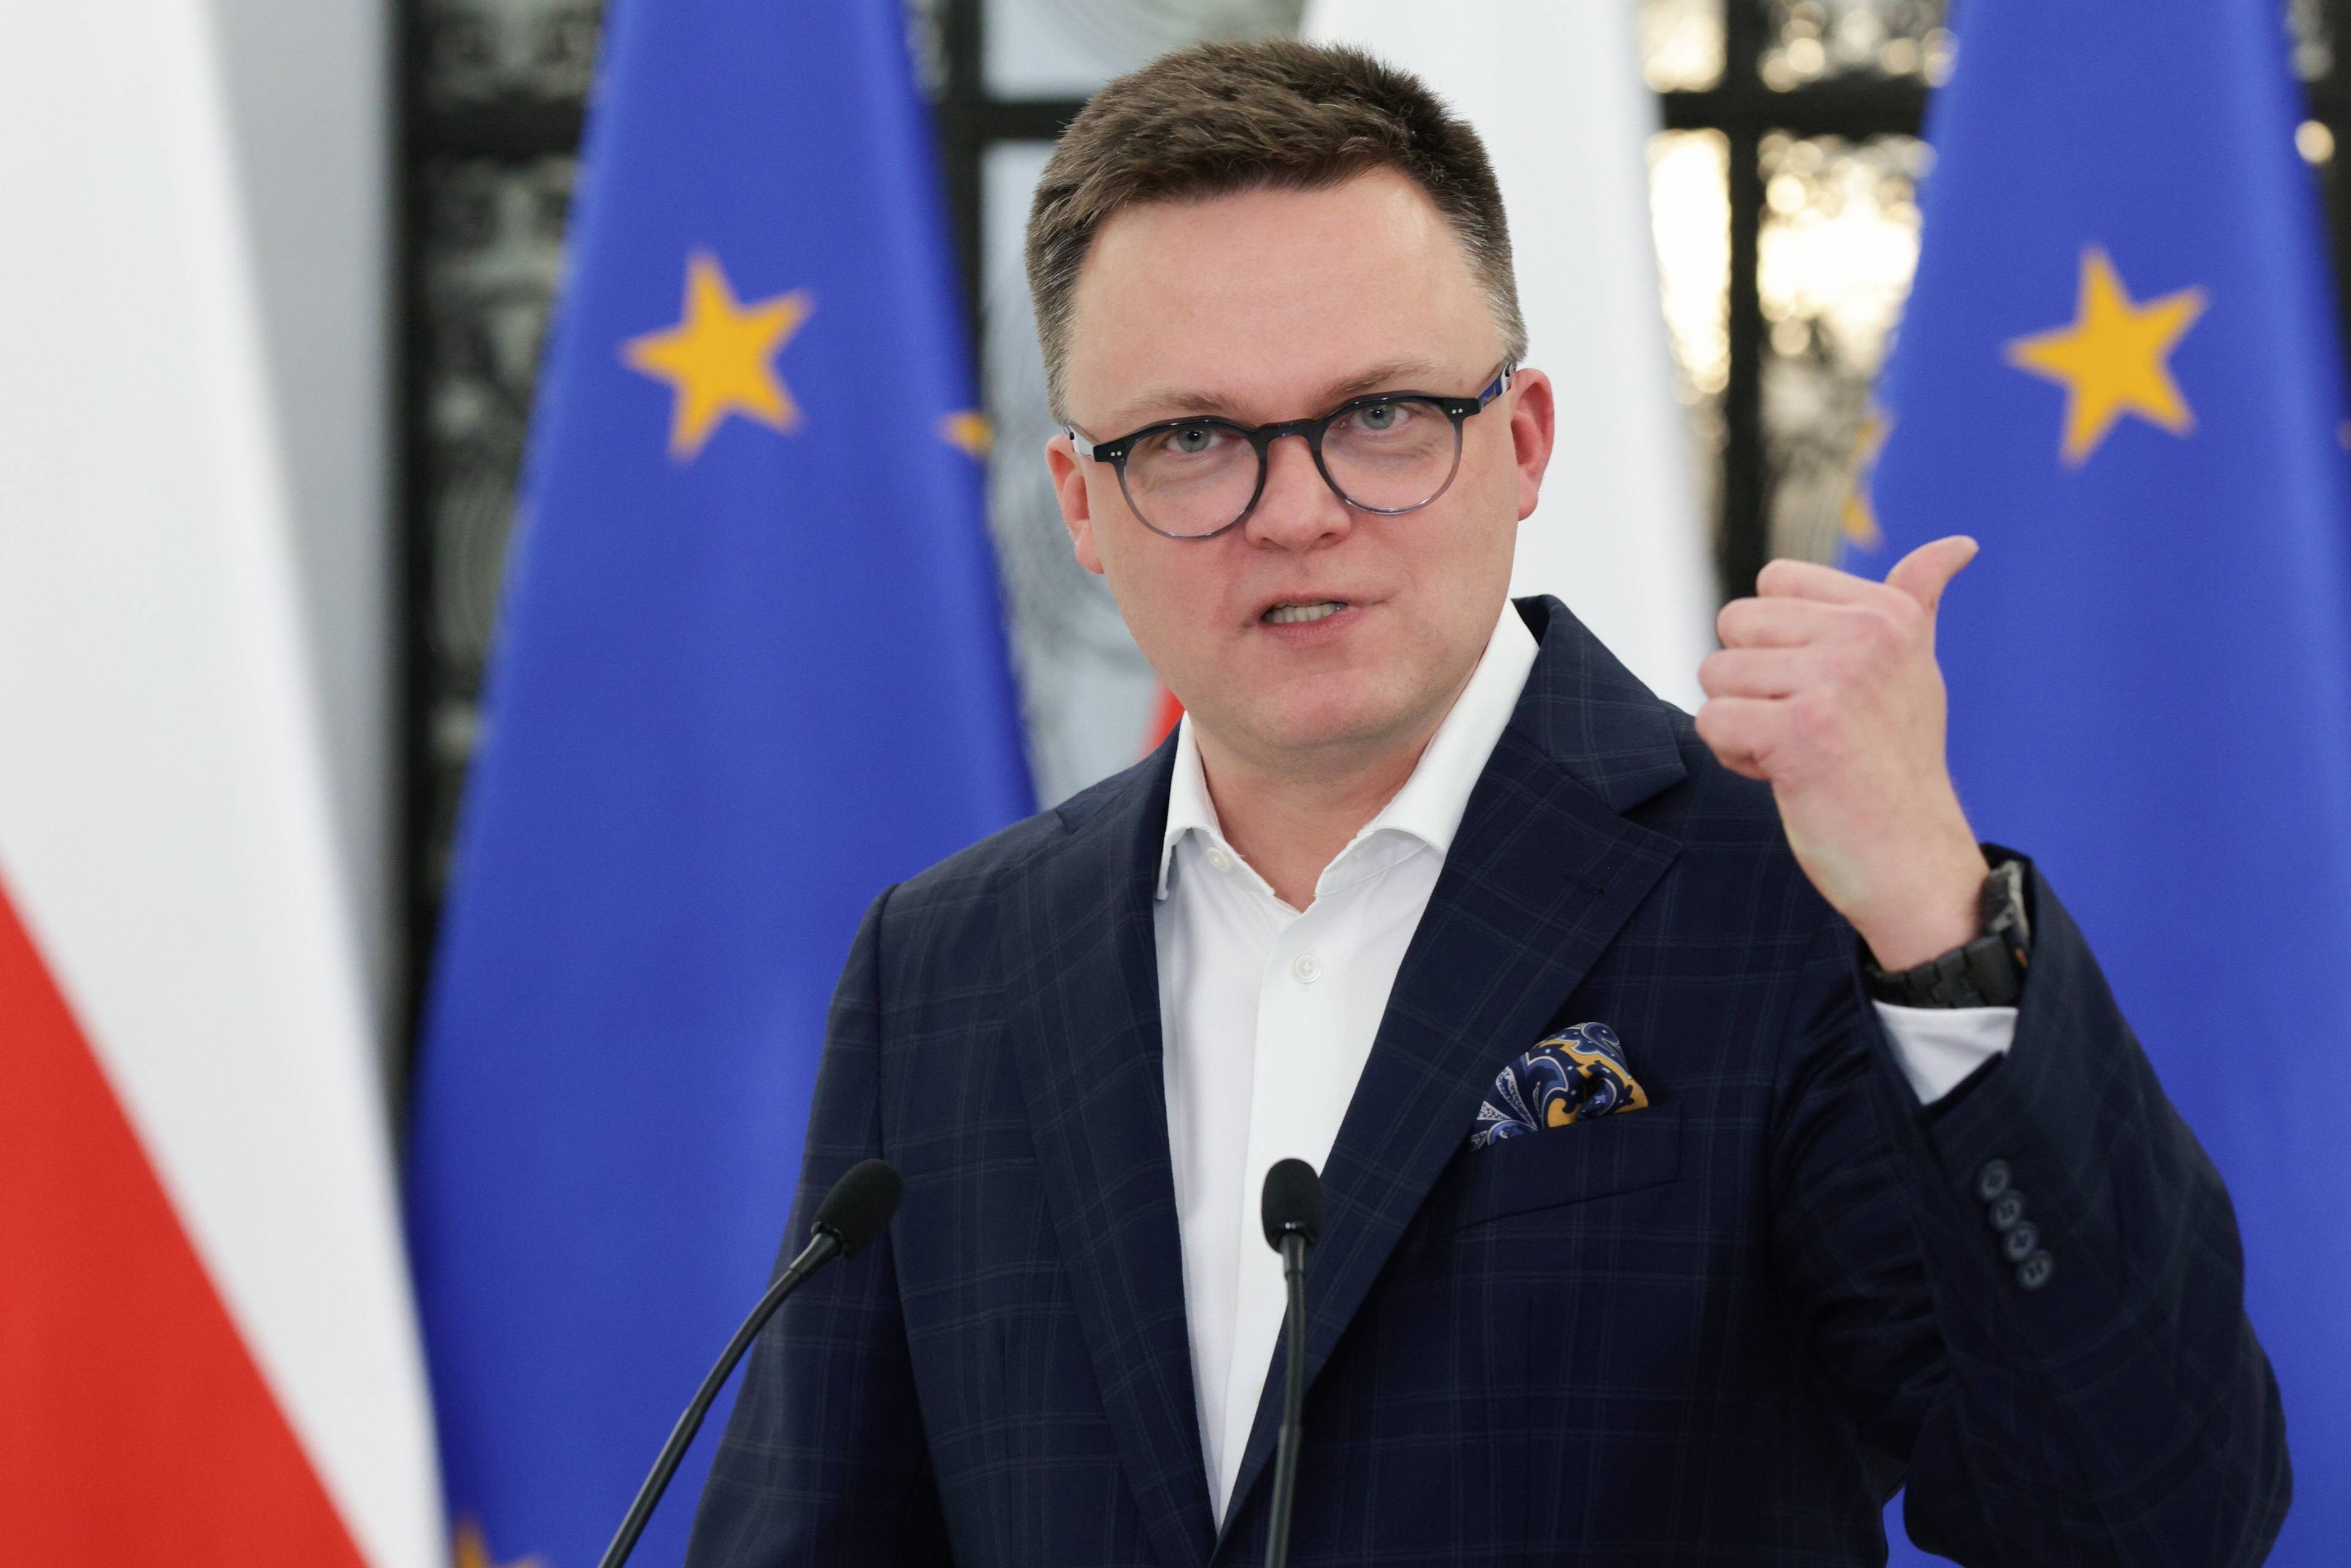 Marszałek Sejmu Szymon Hołownia na tle flag unijnych